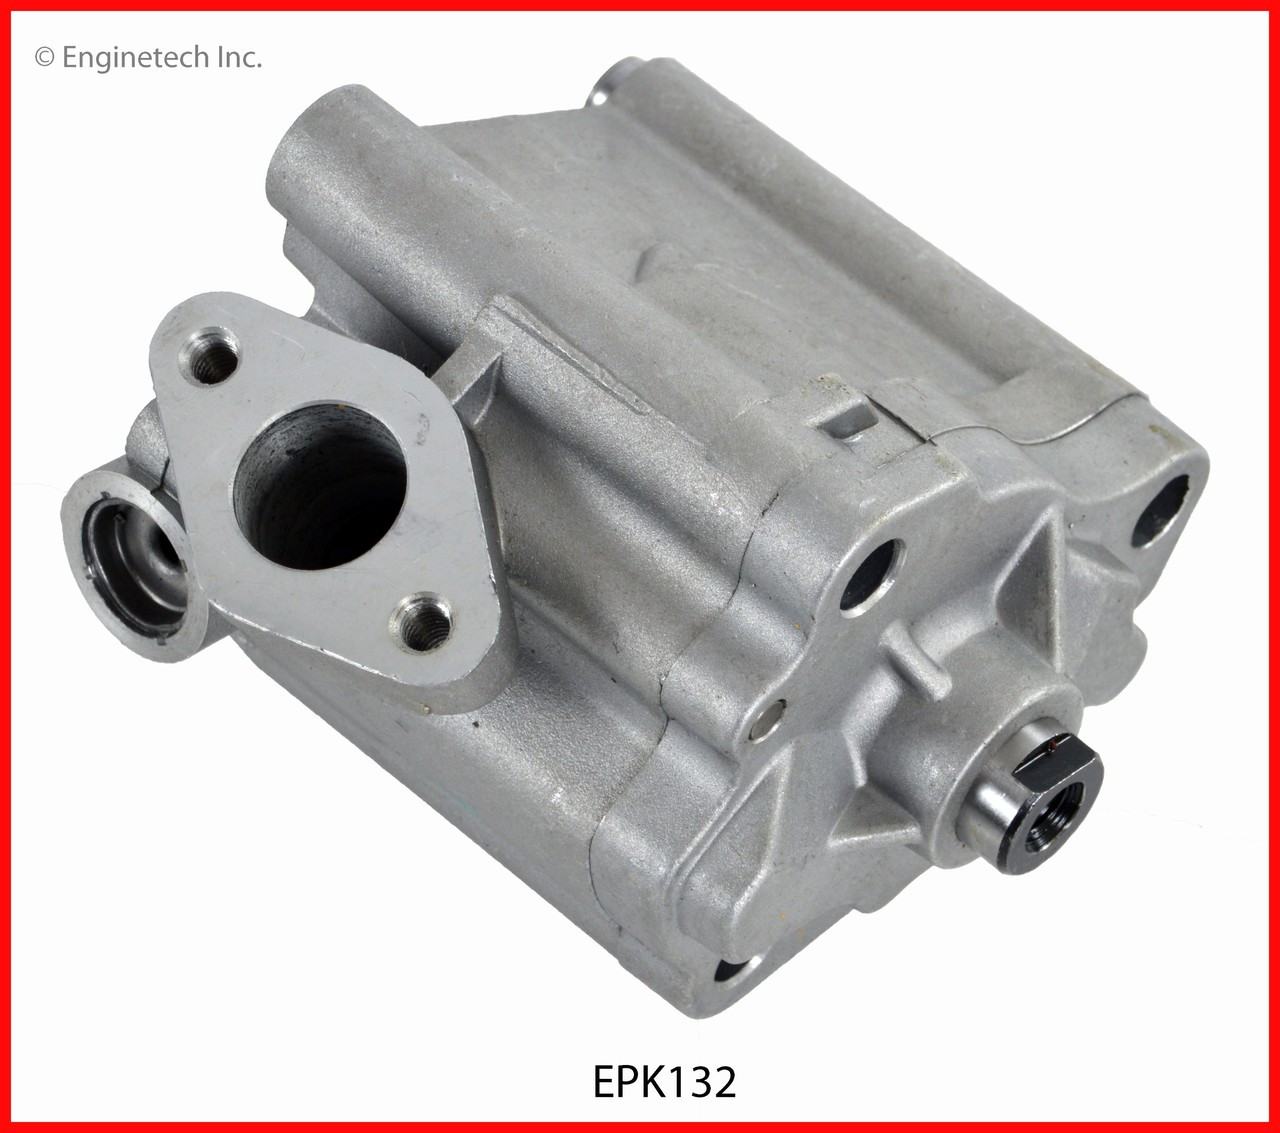 Oil Pump - 2010 Mazda 3 2.0L (EPK132.H80)